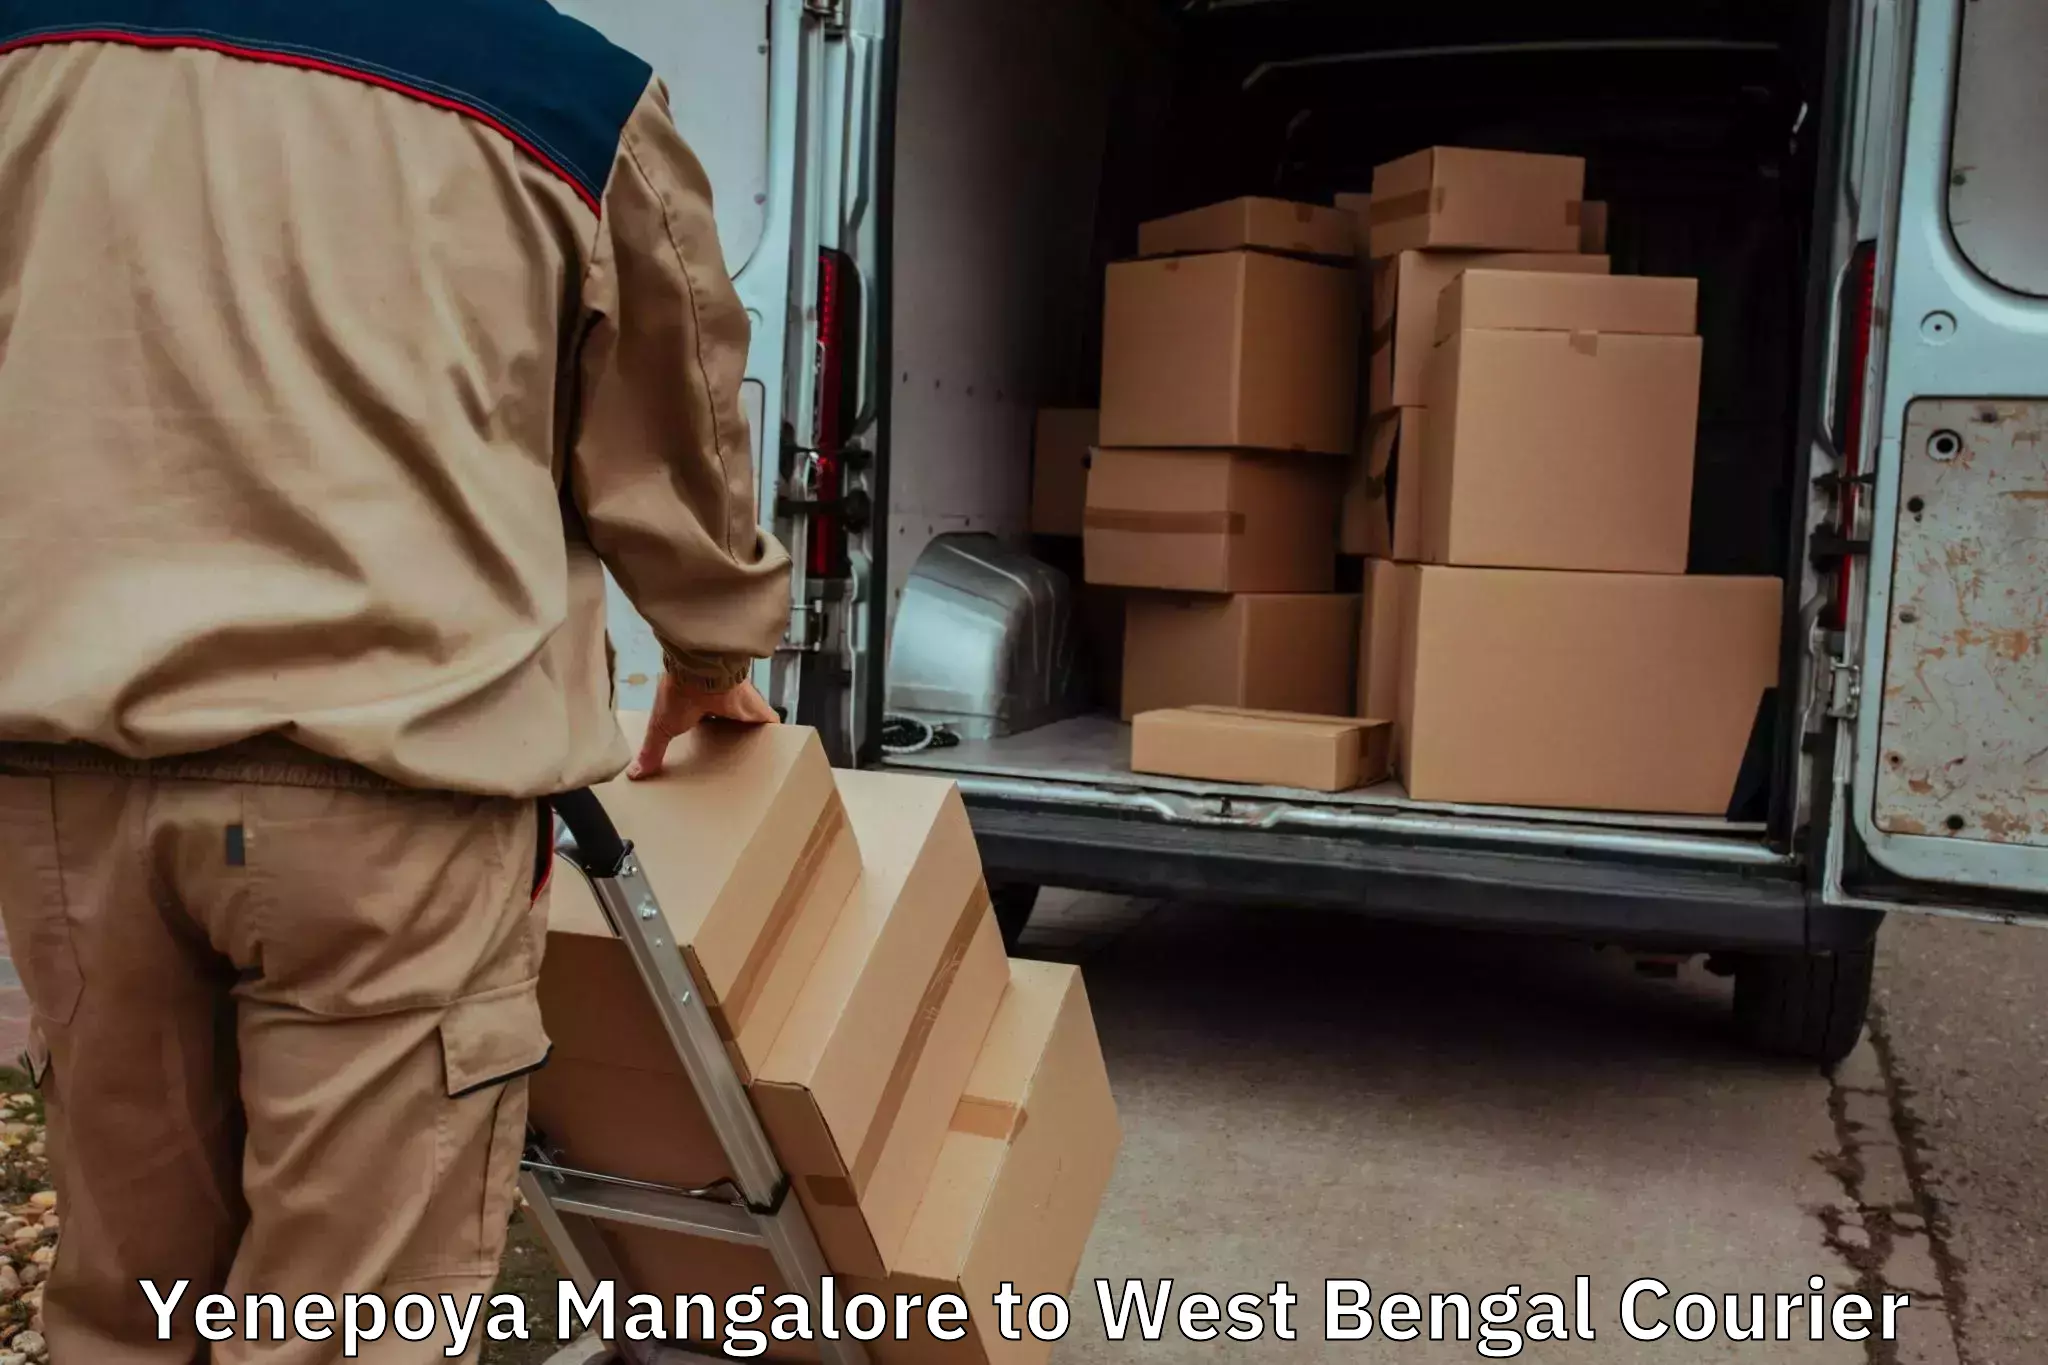 Moving and storage services Yenepoya Mangalore to Nadia